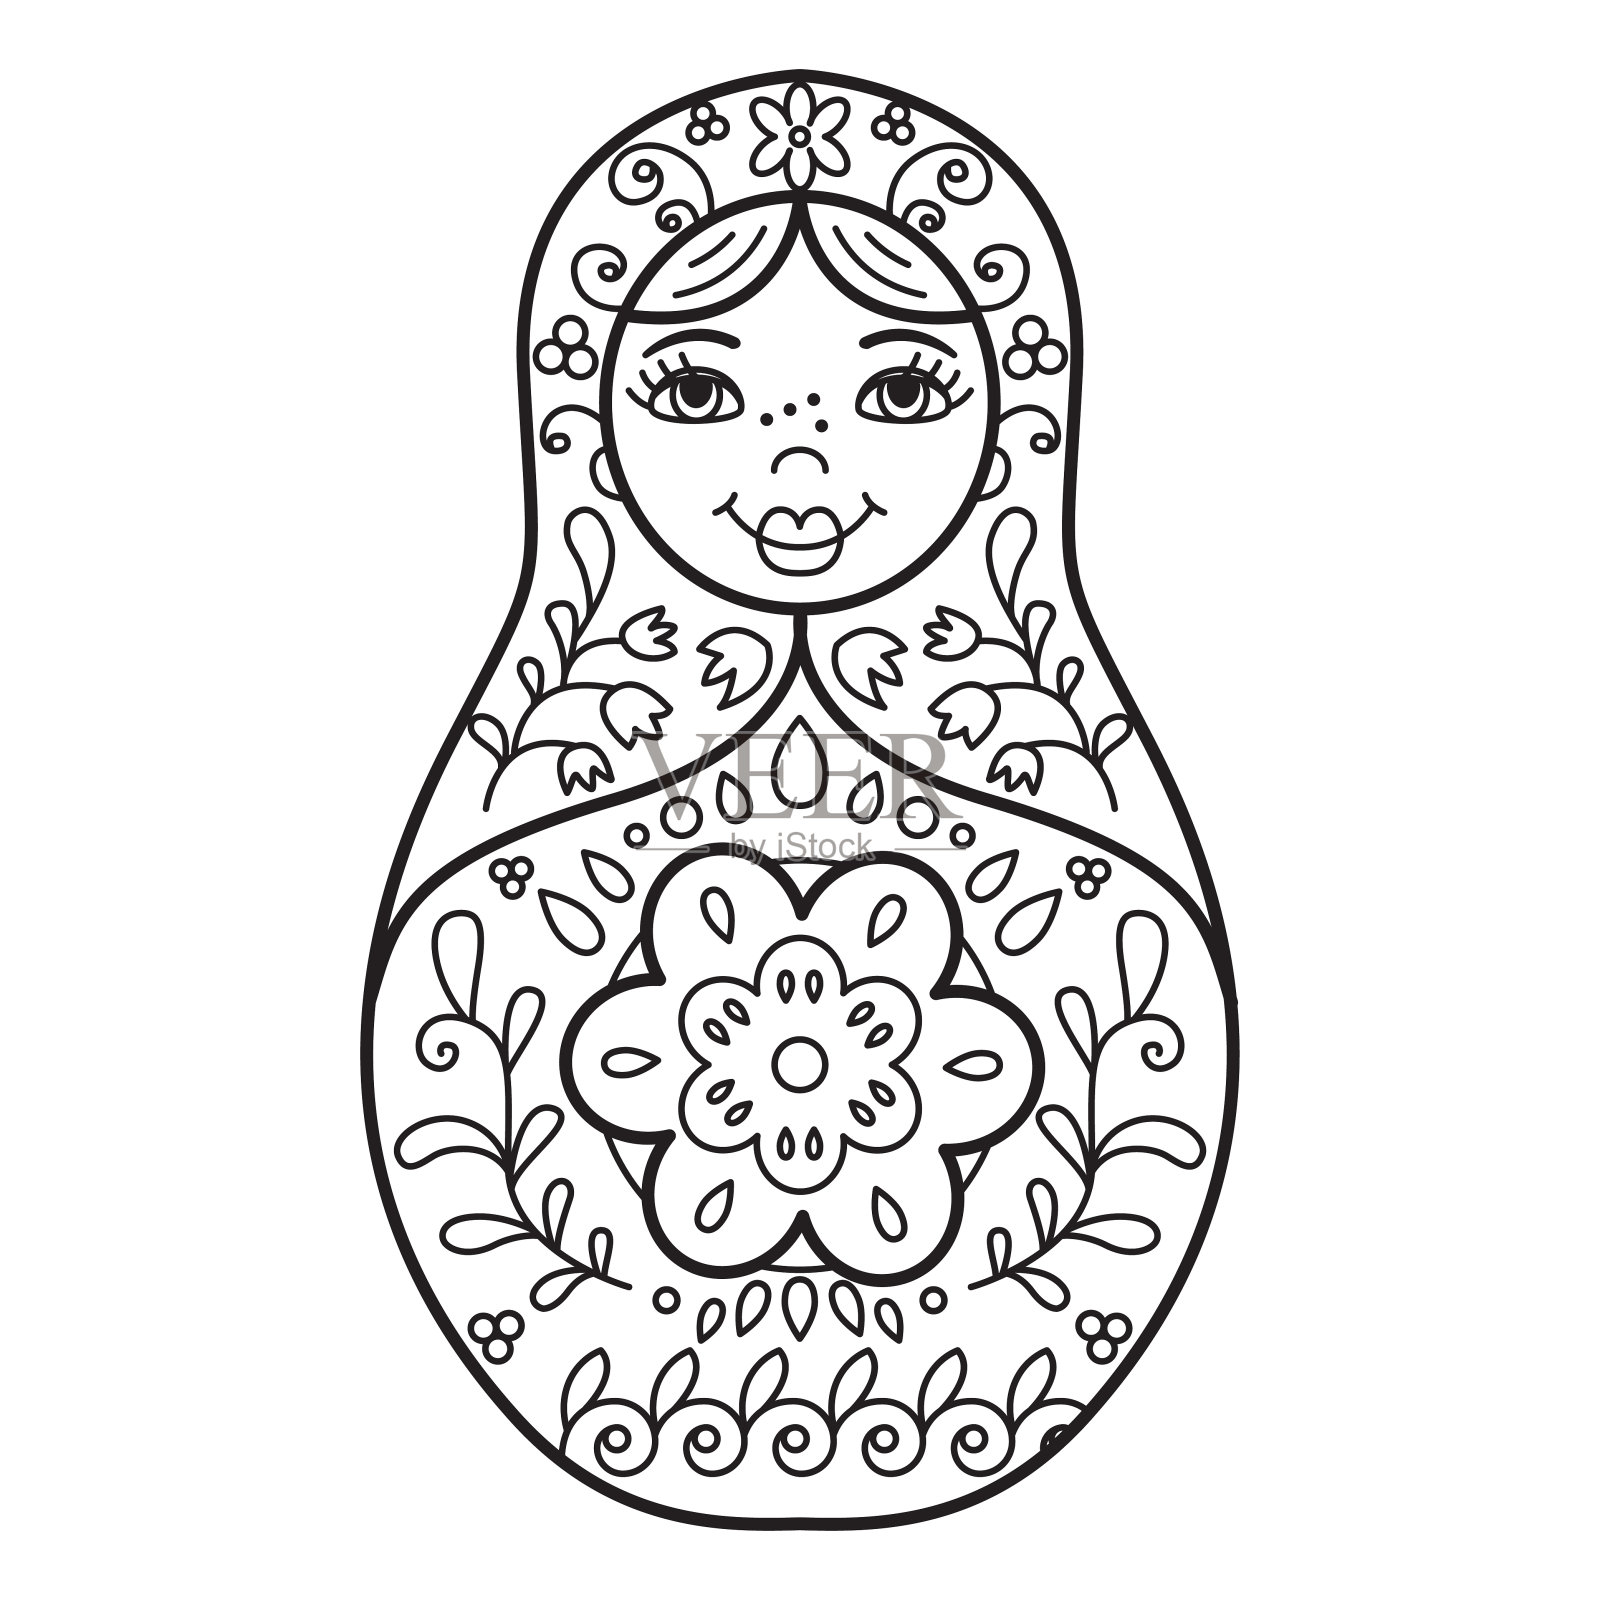 俄罗斯传统套娃(俄罗斯套娃)。插画图片素材